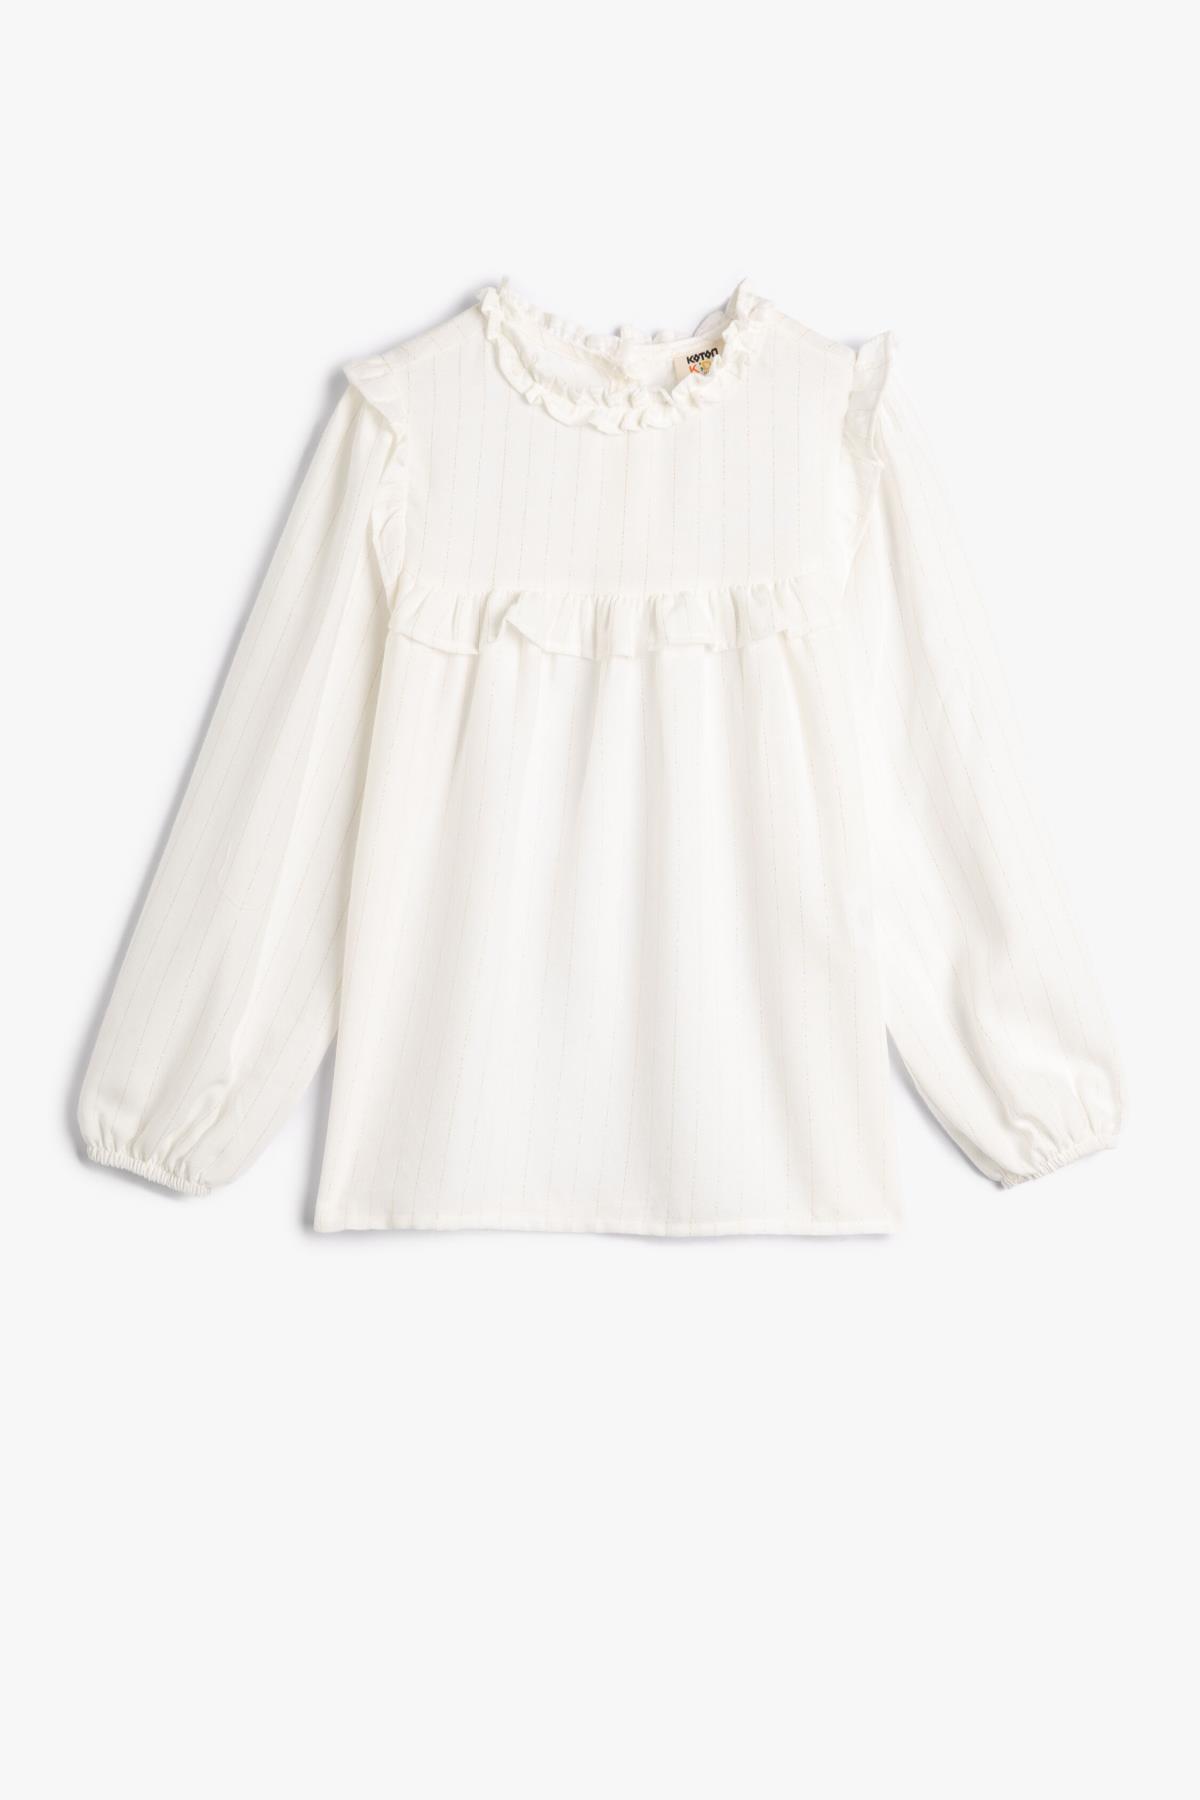 Levně Koton Girl's School Shirt Buttonless Long Sleeve Wide Collar Ruffle Detailed Cotton